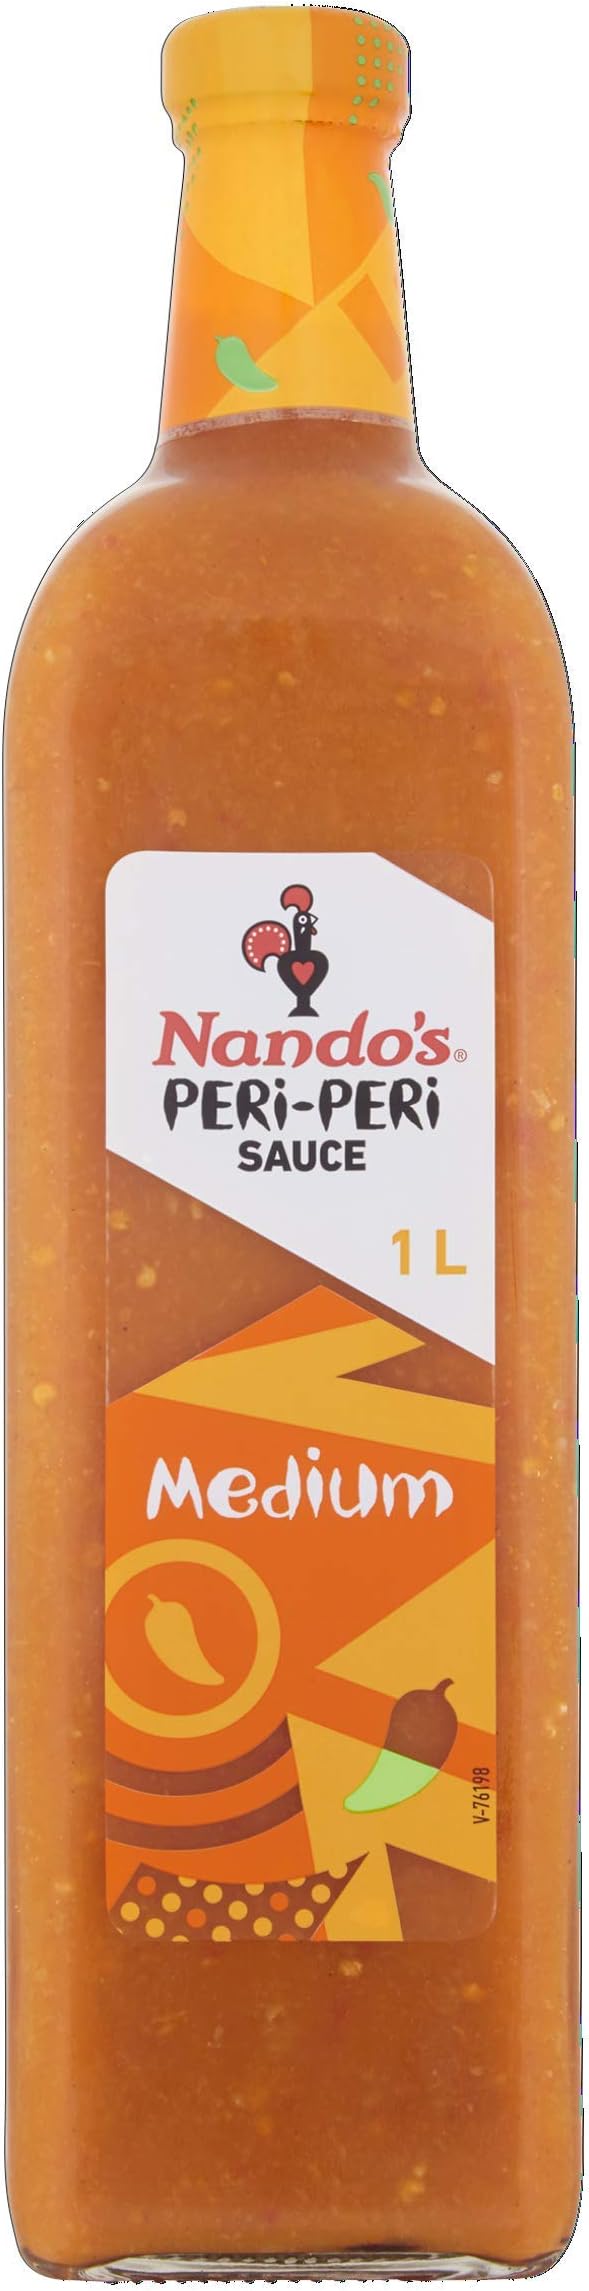 Nando's - Peri-Peri Sauce